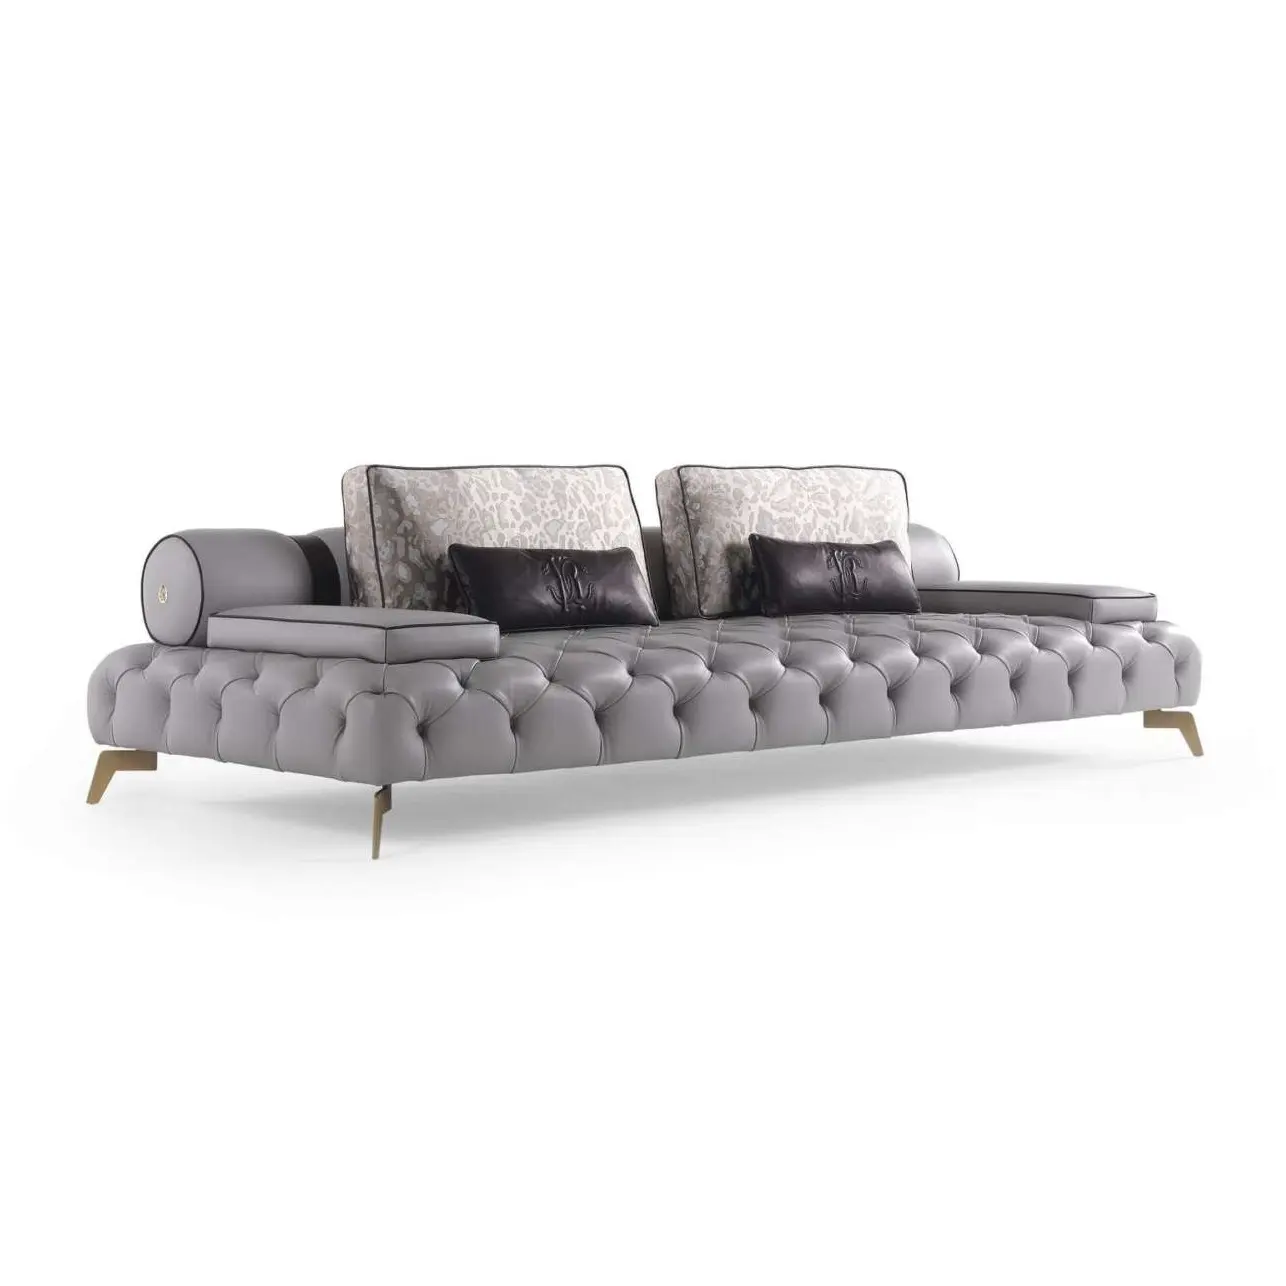 RB-125 диван-кровать мебель творчества мягкий модульный диван